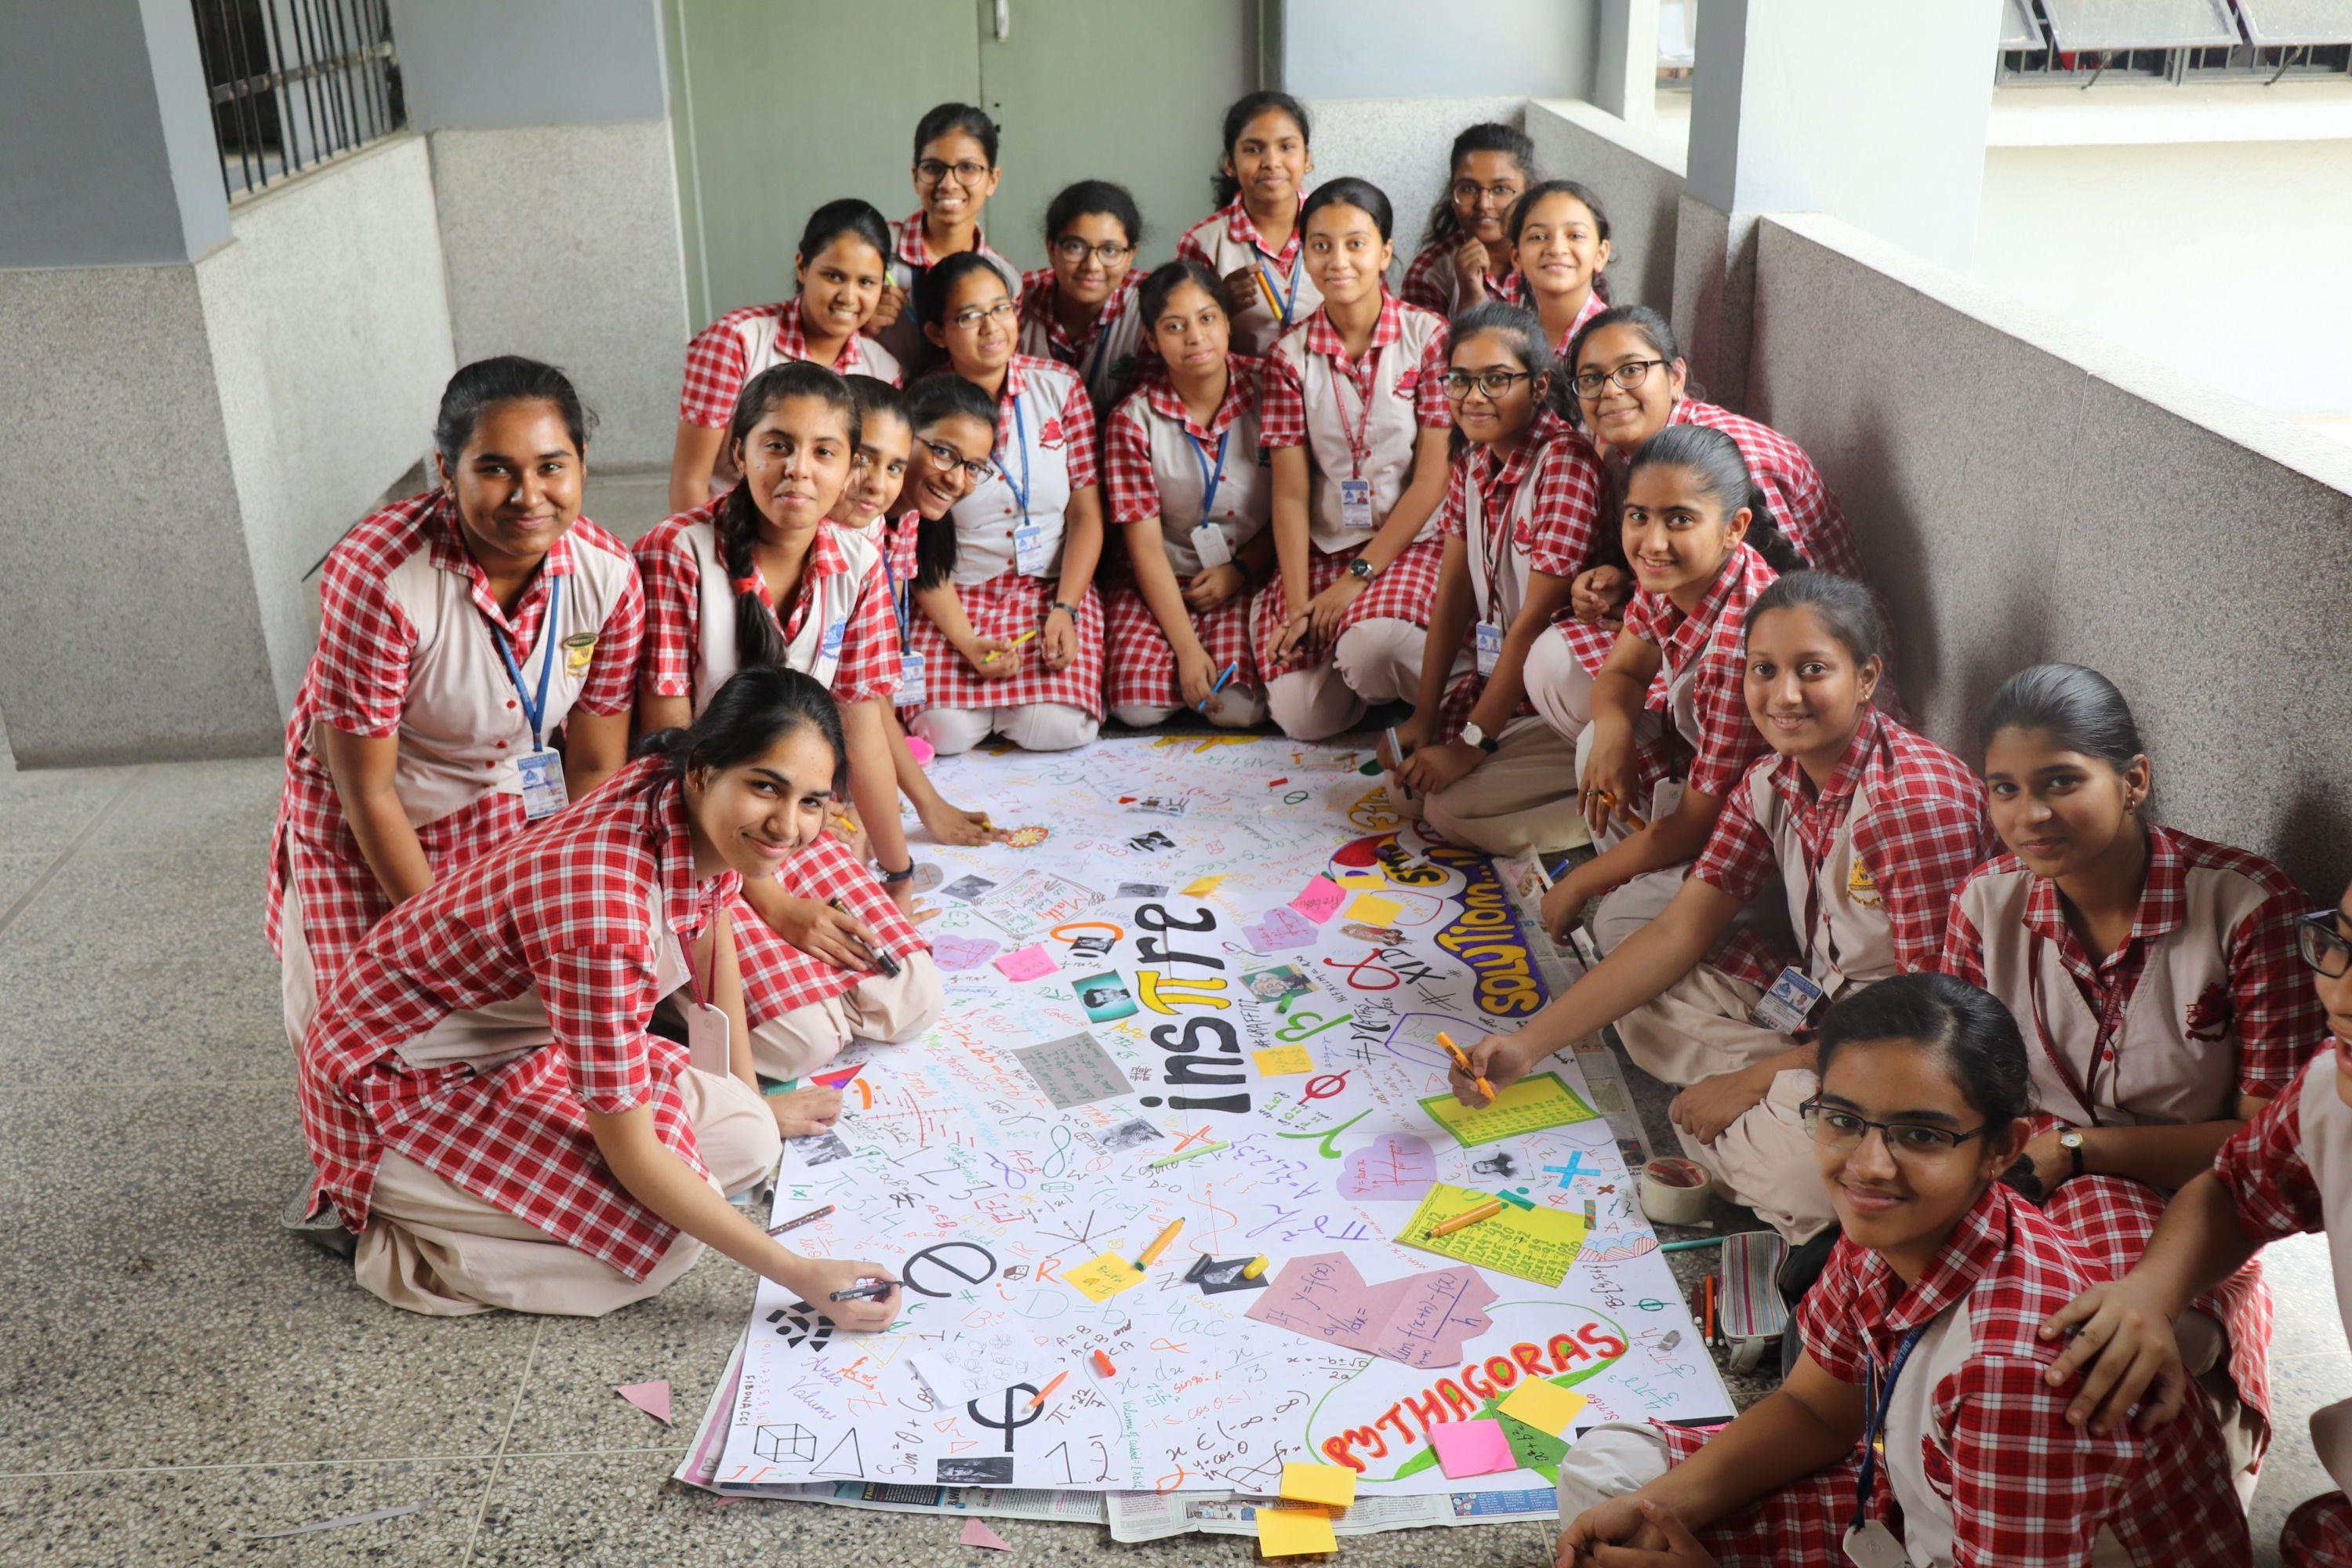 presentation convent school delhi reviews